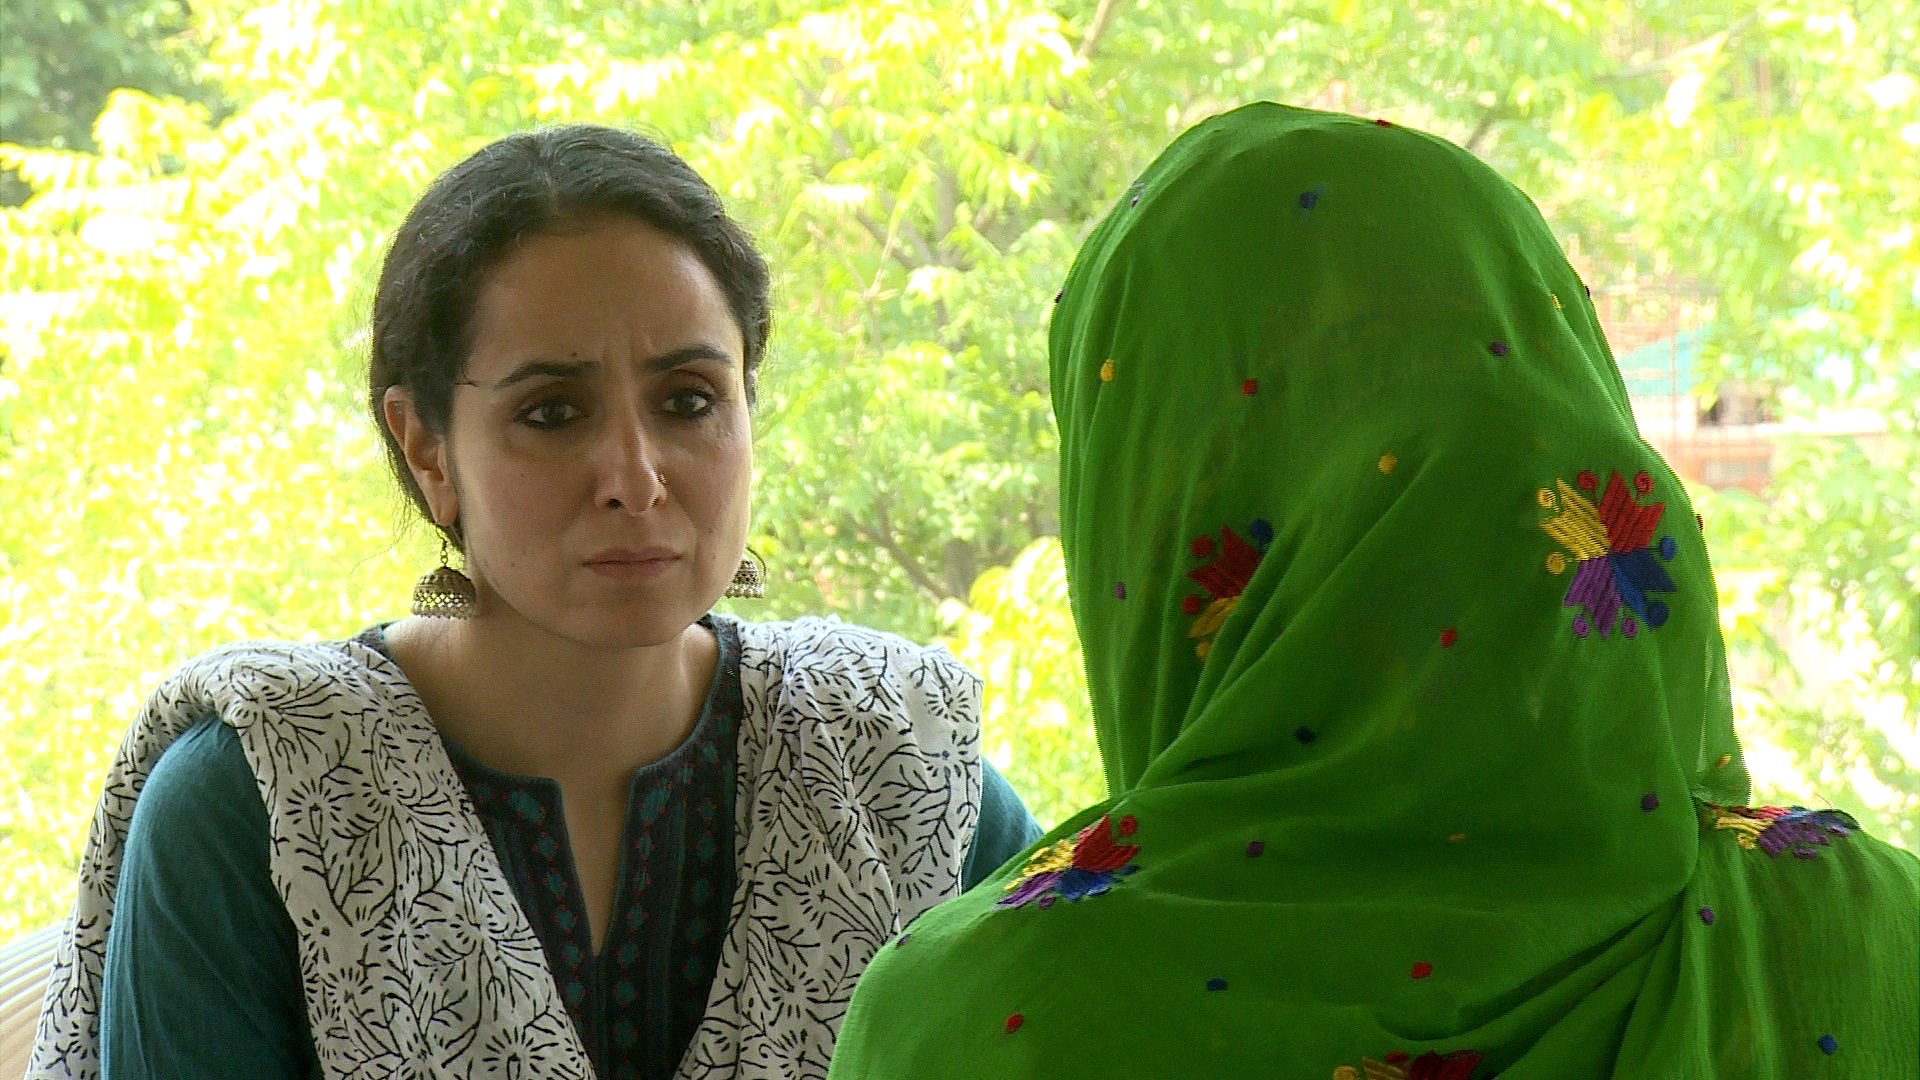 1920px x 1080px - Kashmir 'mass rape' survivors fight for justice - BBC News